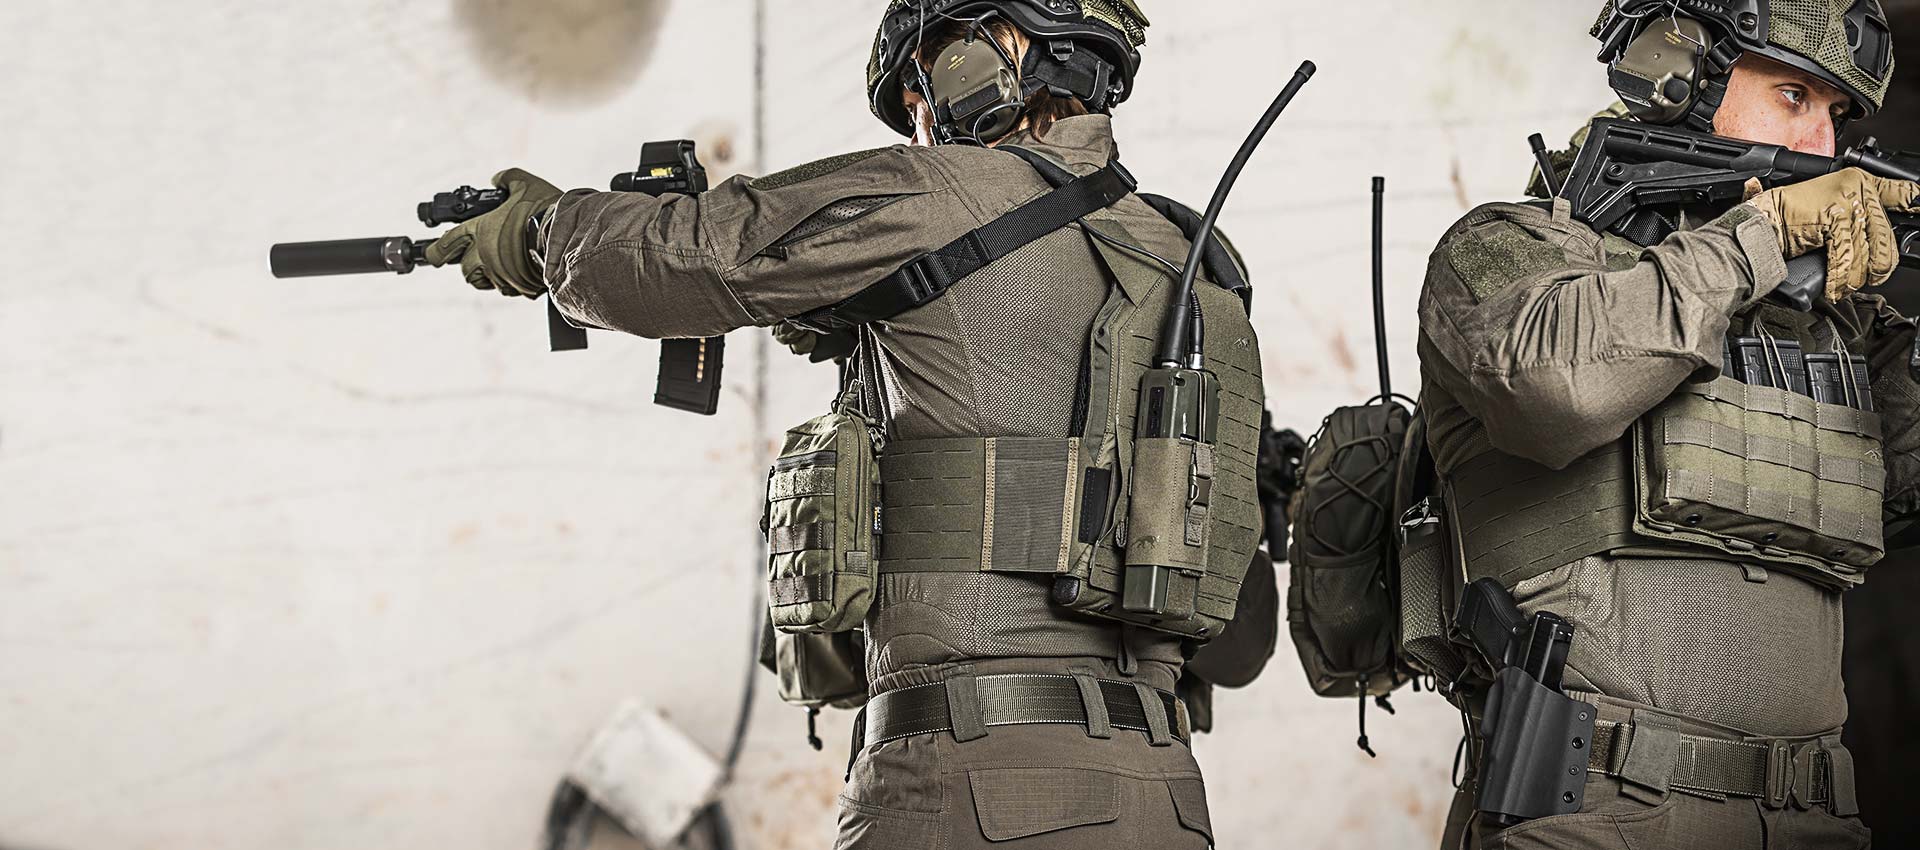 Vêtements tactiques - Équipement tactique - Militaire